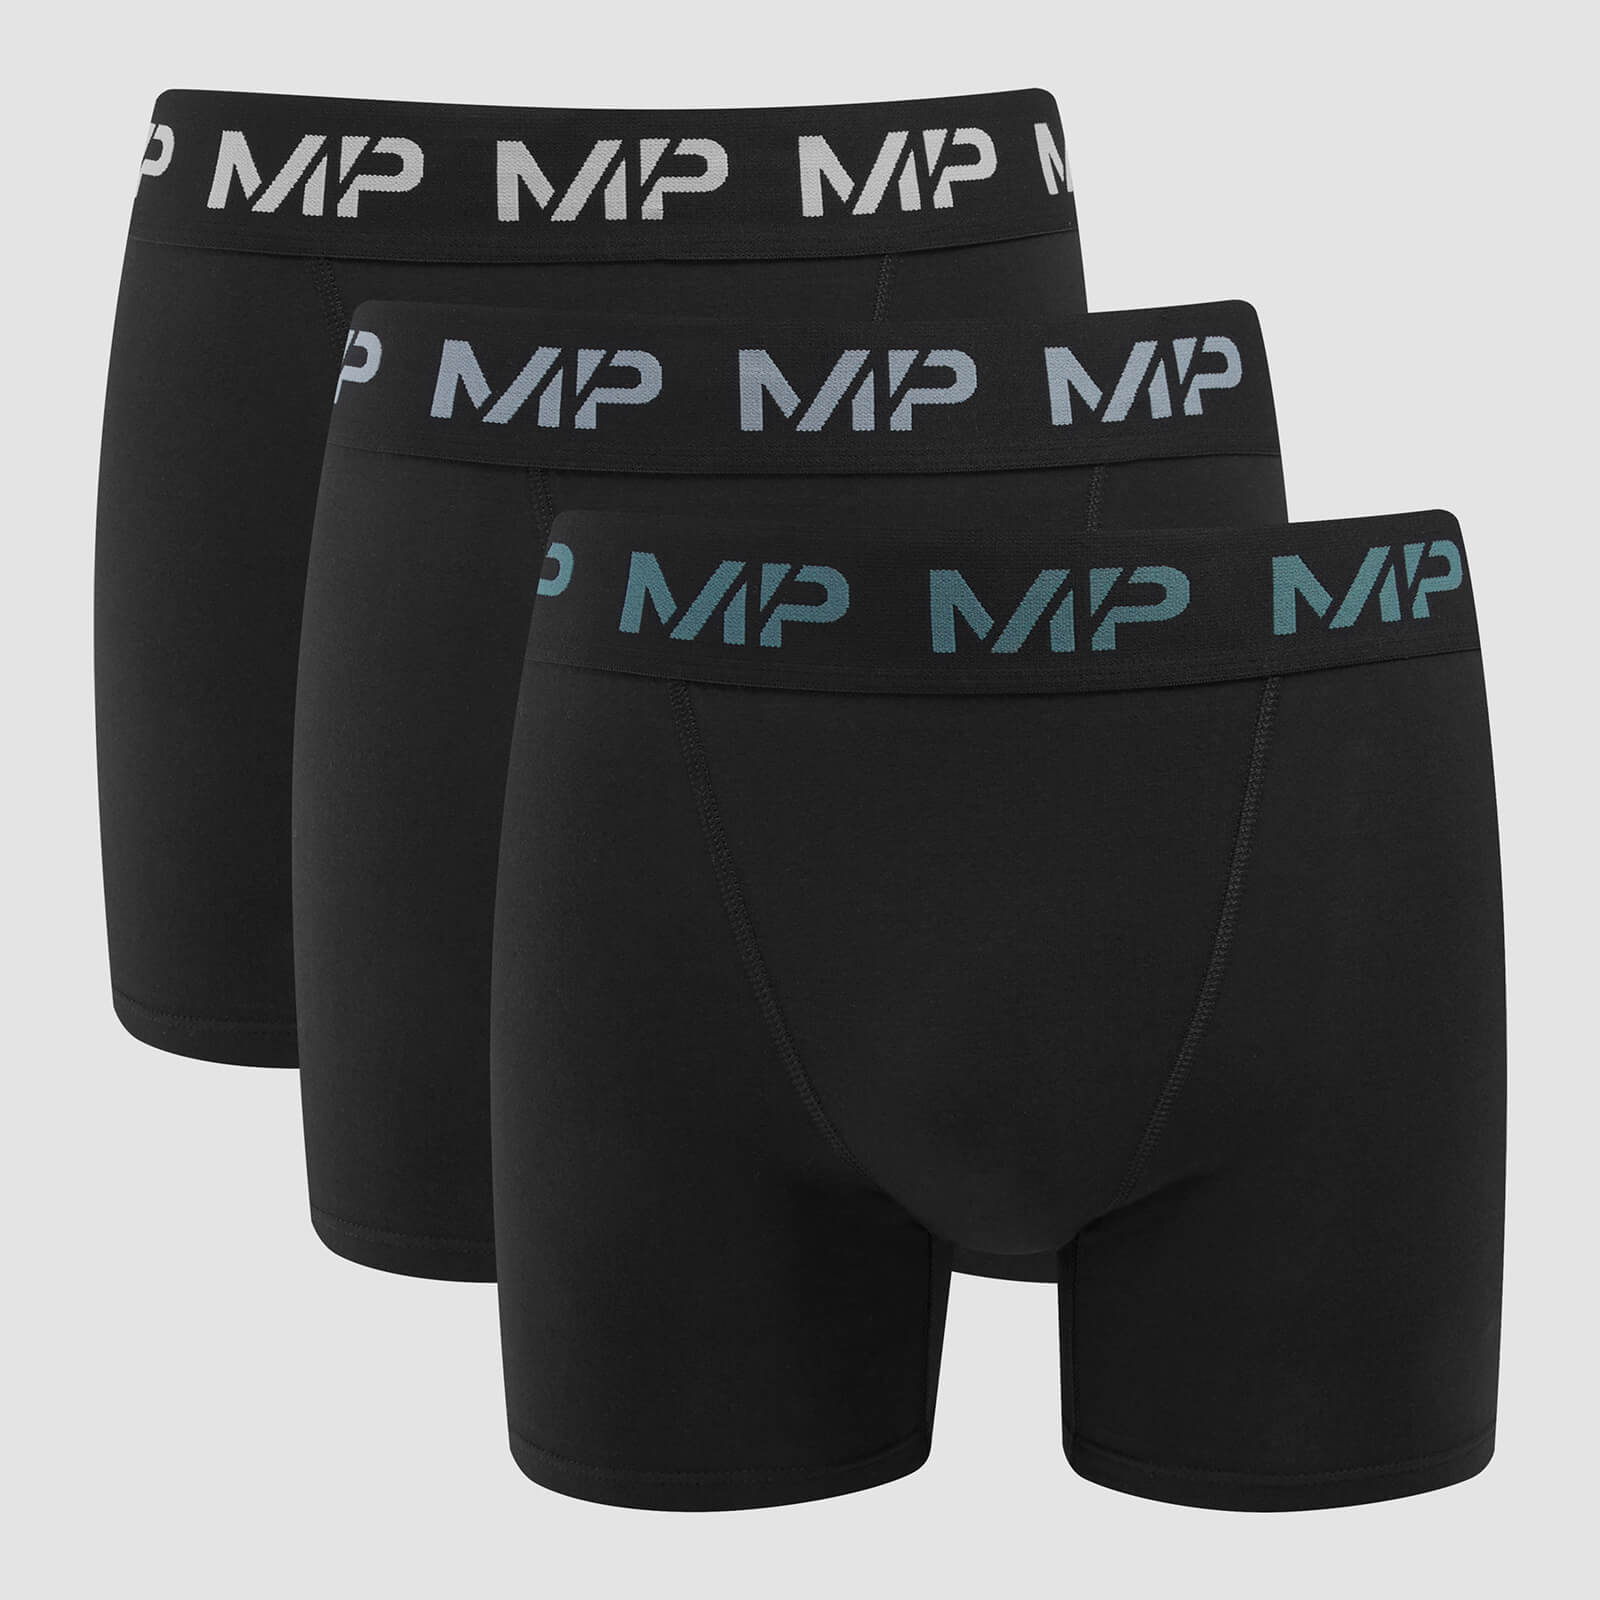 Мъжки боксерки с цветно лого на MP (3 бр. в опаковка) Черно/опушено син/жълто син/мръсно - S